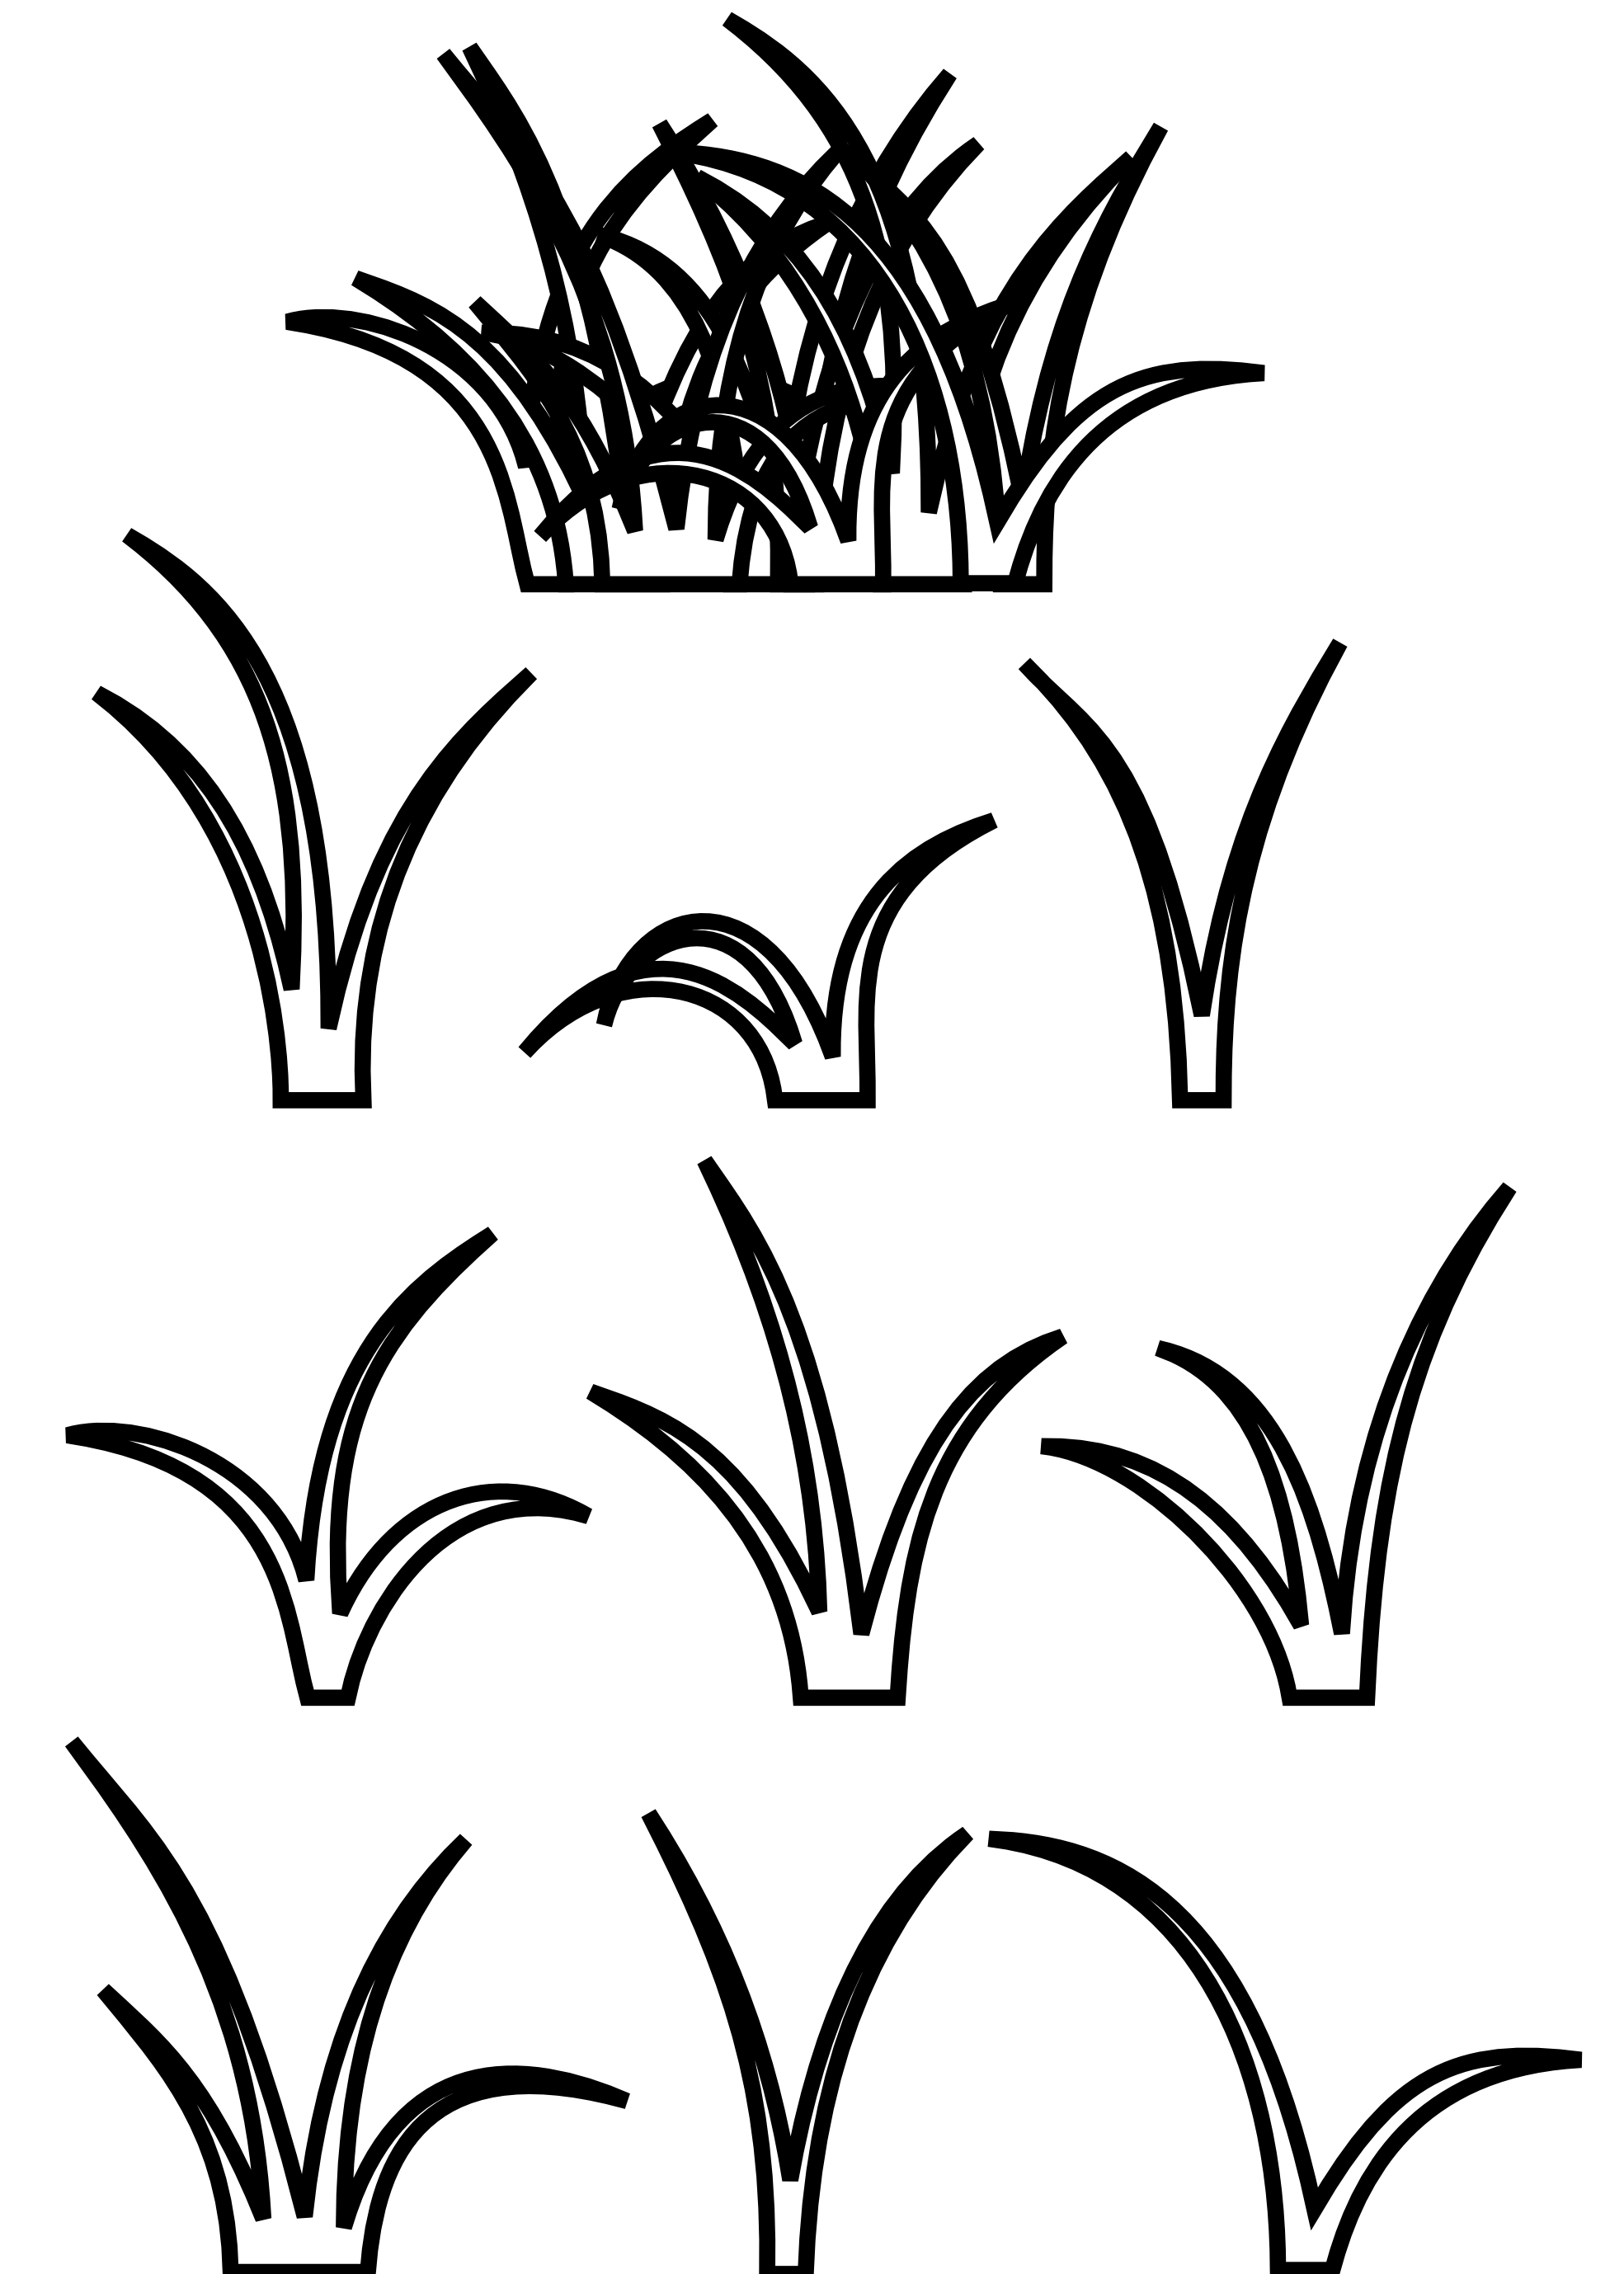 Blades of Grass Clip Art.